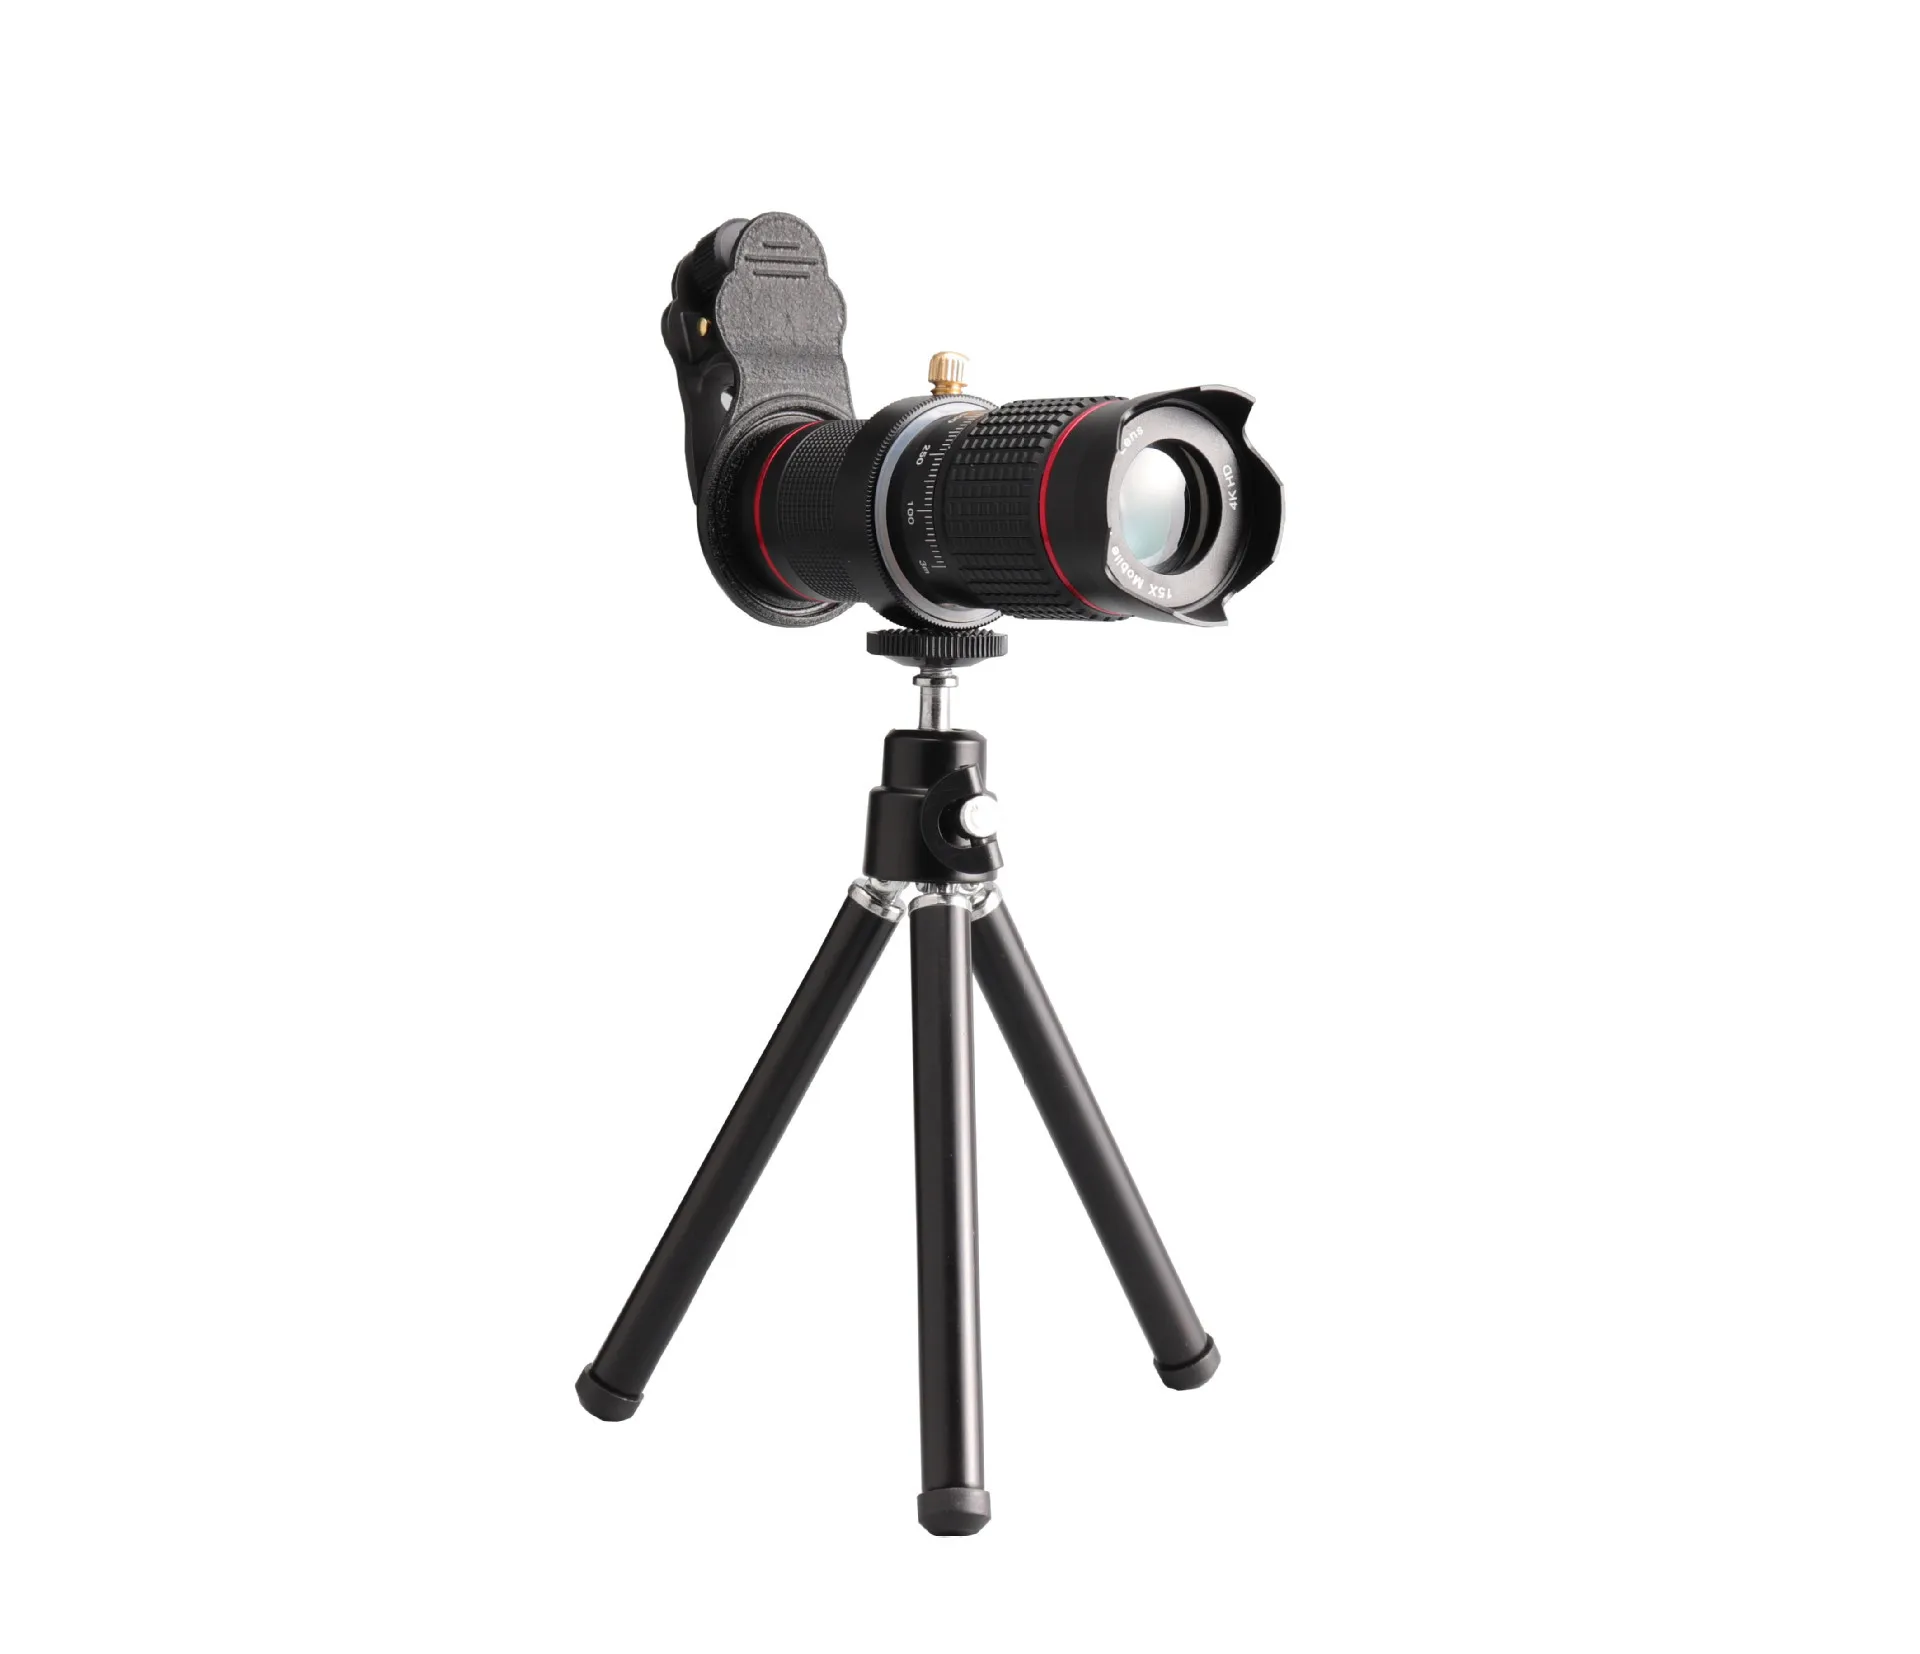 15X телеобъектив HD монокуляр телескоп телефон камера объектив для iPhone 11 Xs Max XR X 8 7 Plus Android смартфон мобильный